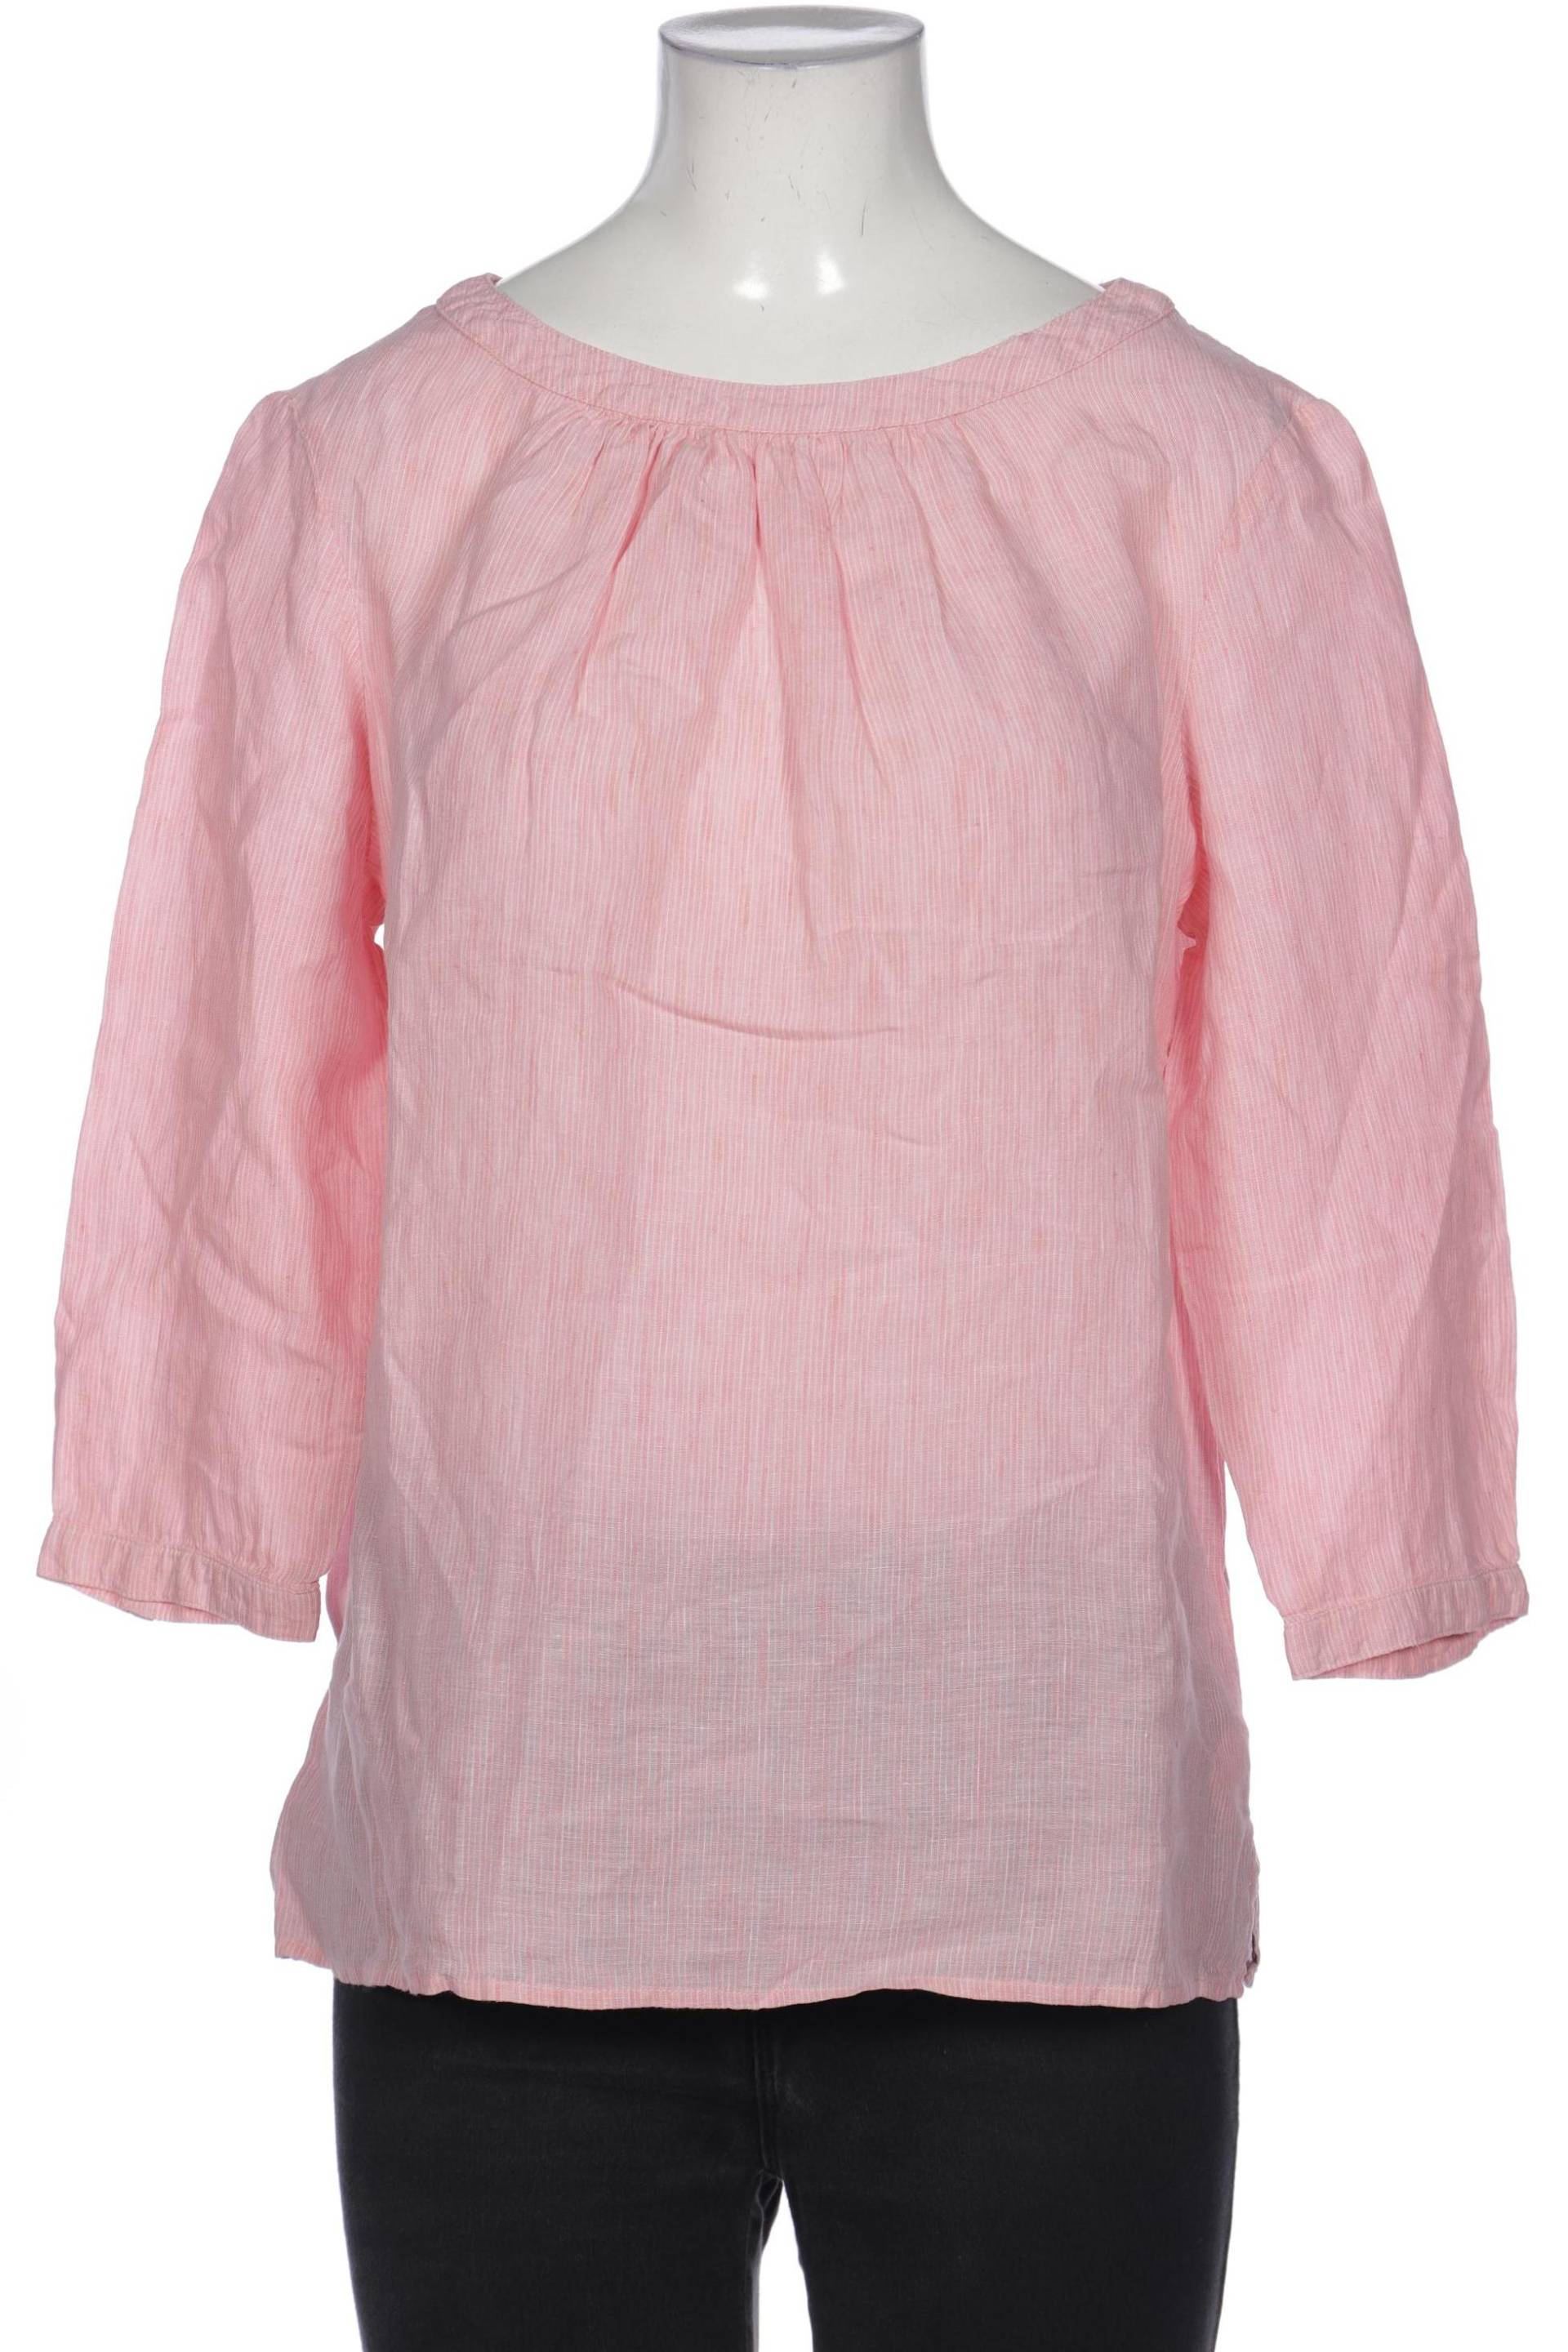 Boden Damen Bluse, pink, Gr. 38 von Boden